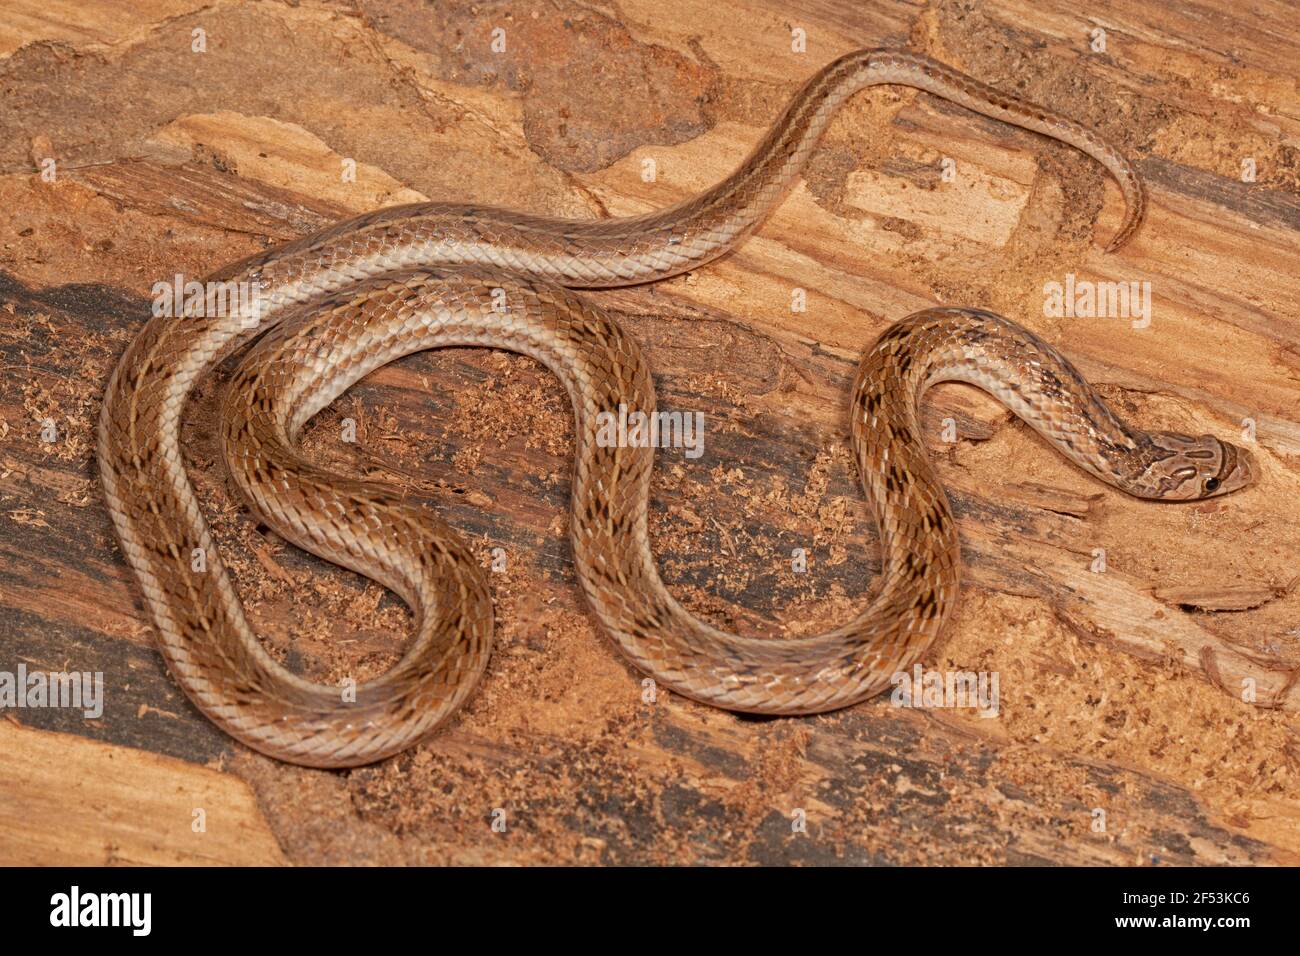 Il serpente di Kukri striato, Oligodon taeniolatus è una specie di serpente non venoso che si trova in Asia. Conosciuto anche come il Kukri variegato o il Kukri di Russell. Foto Stock